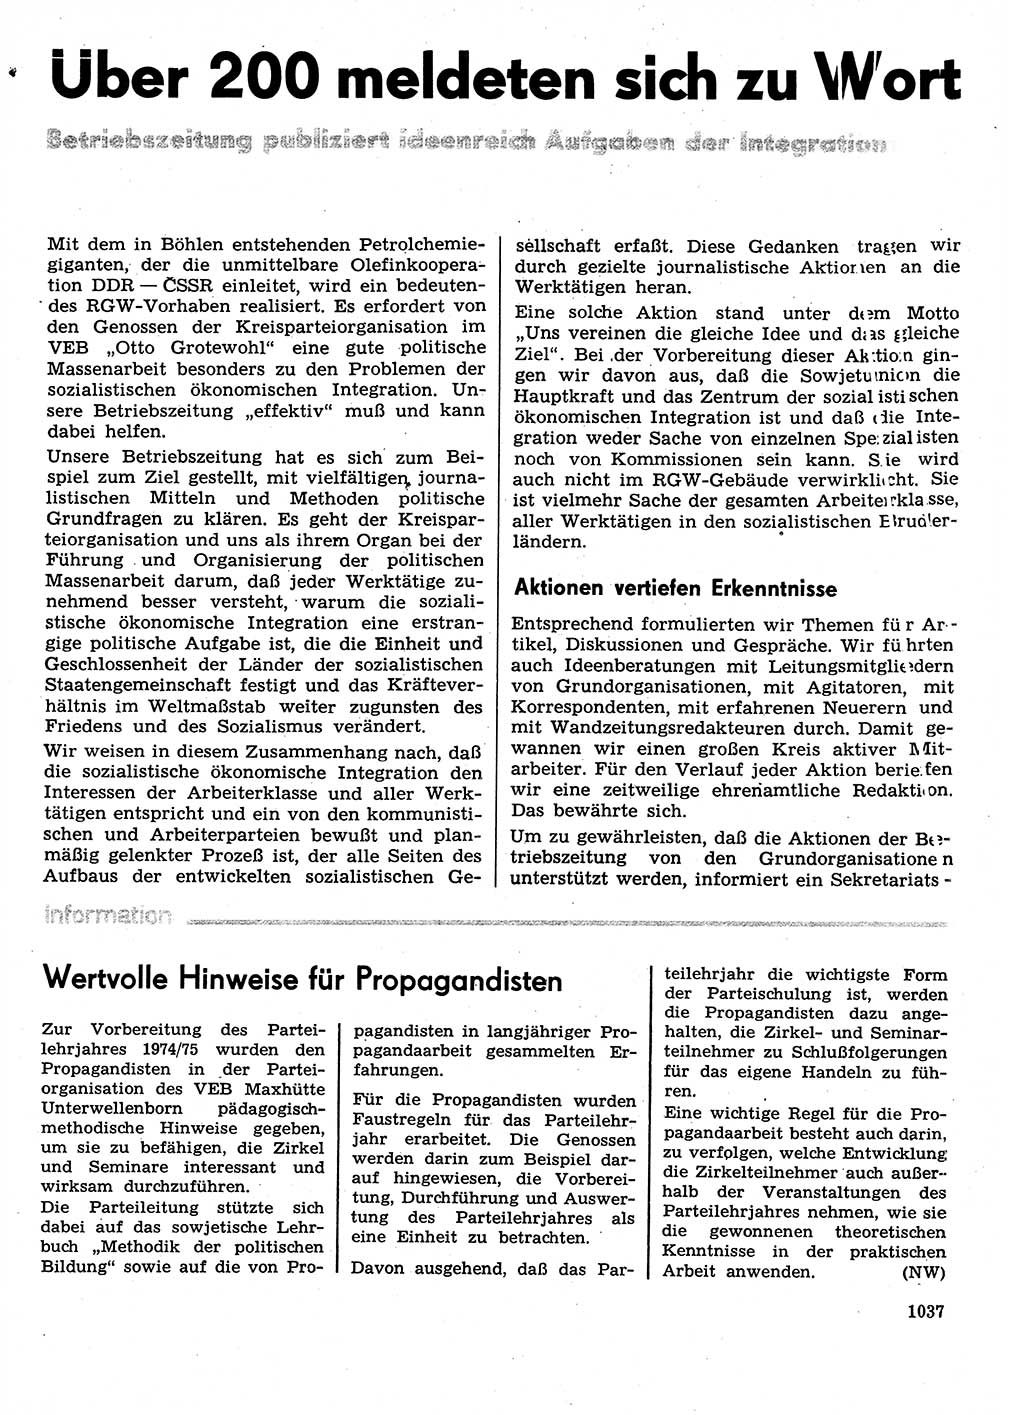 Neuer Weg (NW), Organ des Zentralkomitees (ZK) der SED (Sozialistische Einheitspartei Deutschlands) für Fragen des Parteilebens, 29. Jahrgang [Deutsche Demokratische Republik (DDR)] 1974, Seite 1037 (NW ZK SED DDR 1974, S. 1037)